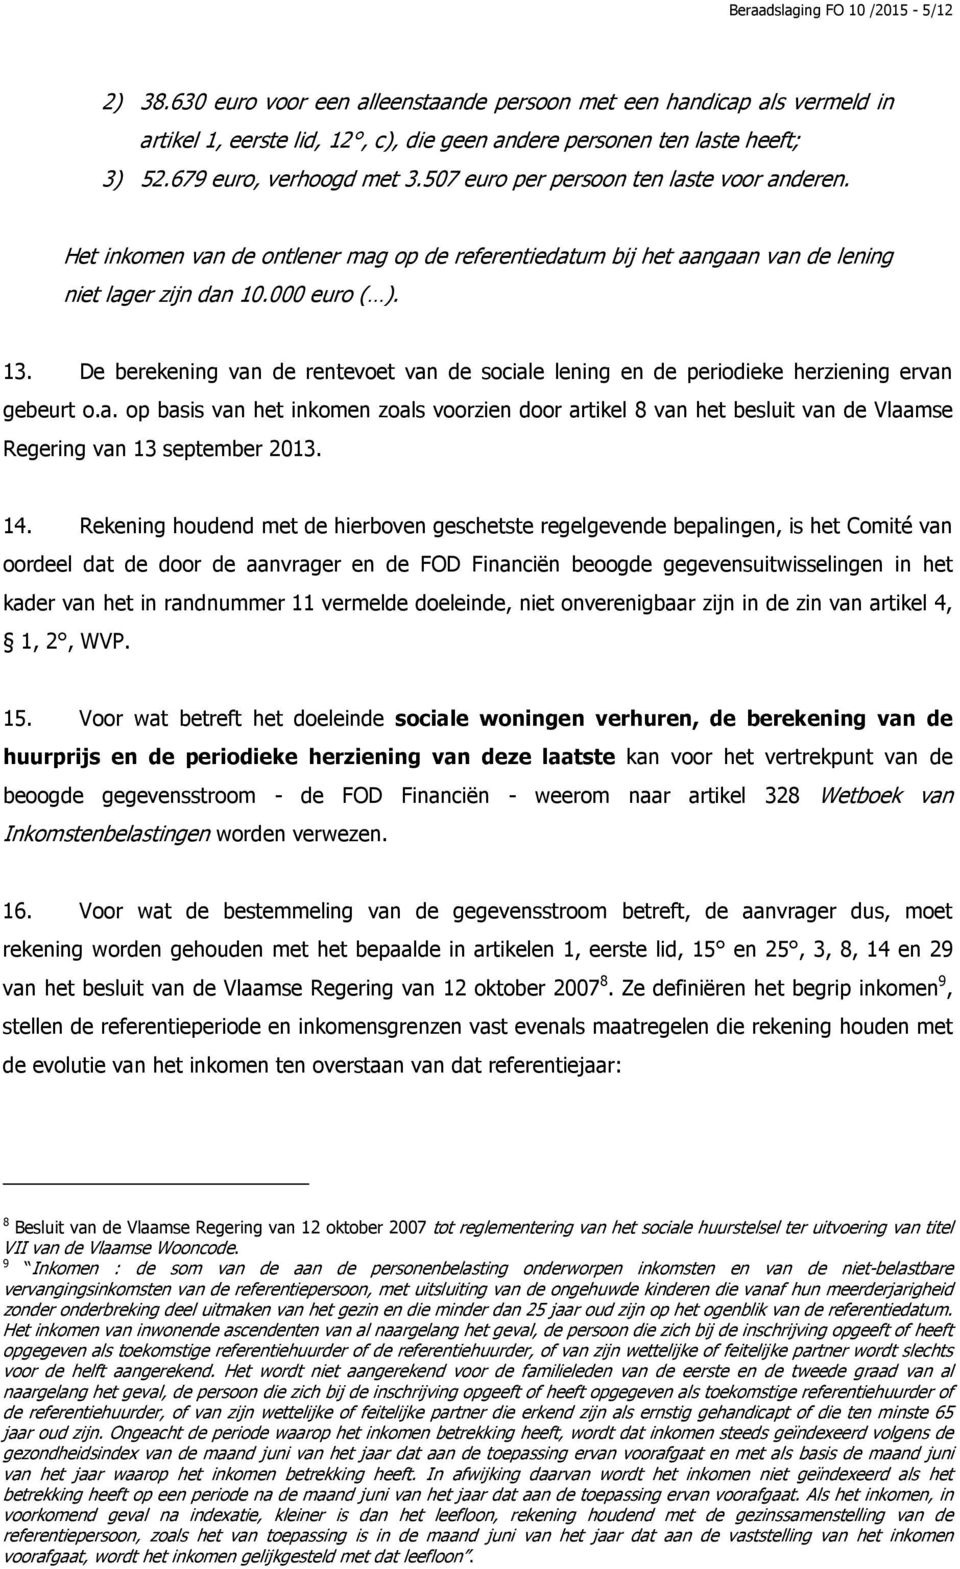 De berekening van de rentevoet van de sociale lening en de periodieke herziening ervan gebeurt o.a. op basis van het inkomen zoals voorzien door artikel 8 van het besluit van de Vlaamse Regering van 13 september 2013.